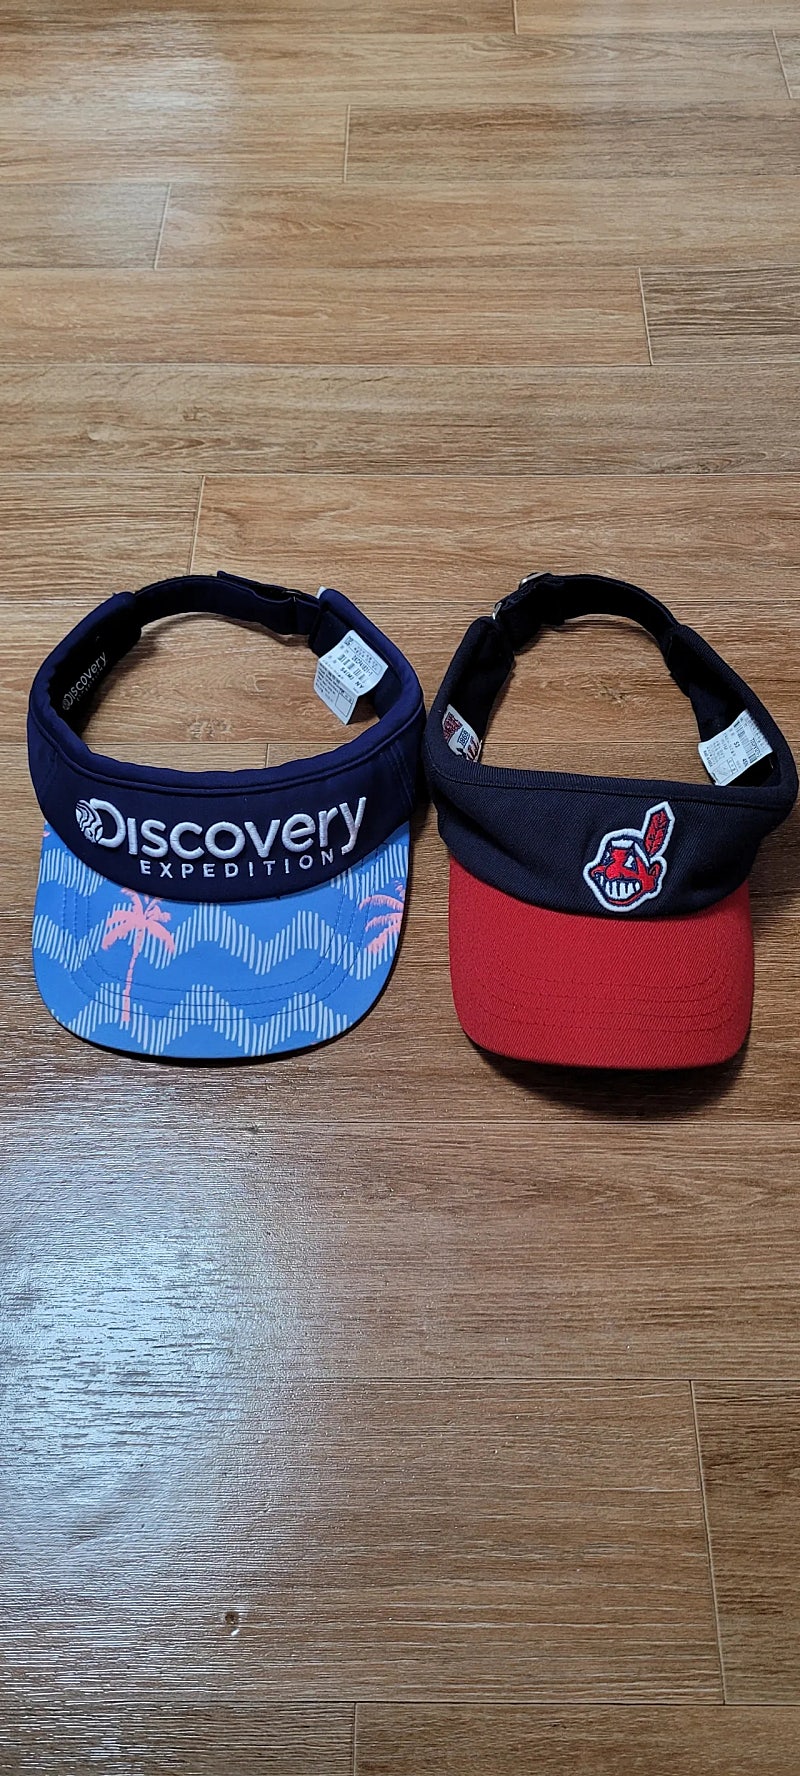 (키즈,아동) 디스커버리 MLB 키즈 모자, 아동 썬캡 / Discovery 메이져리그 주니어 캡 /택포1.4